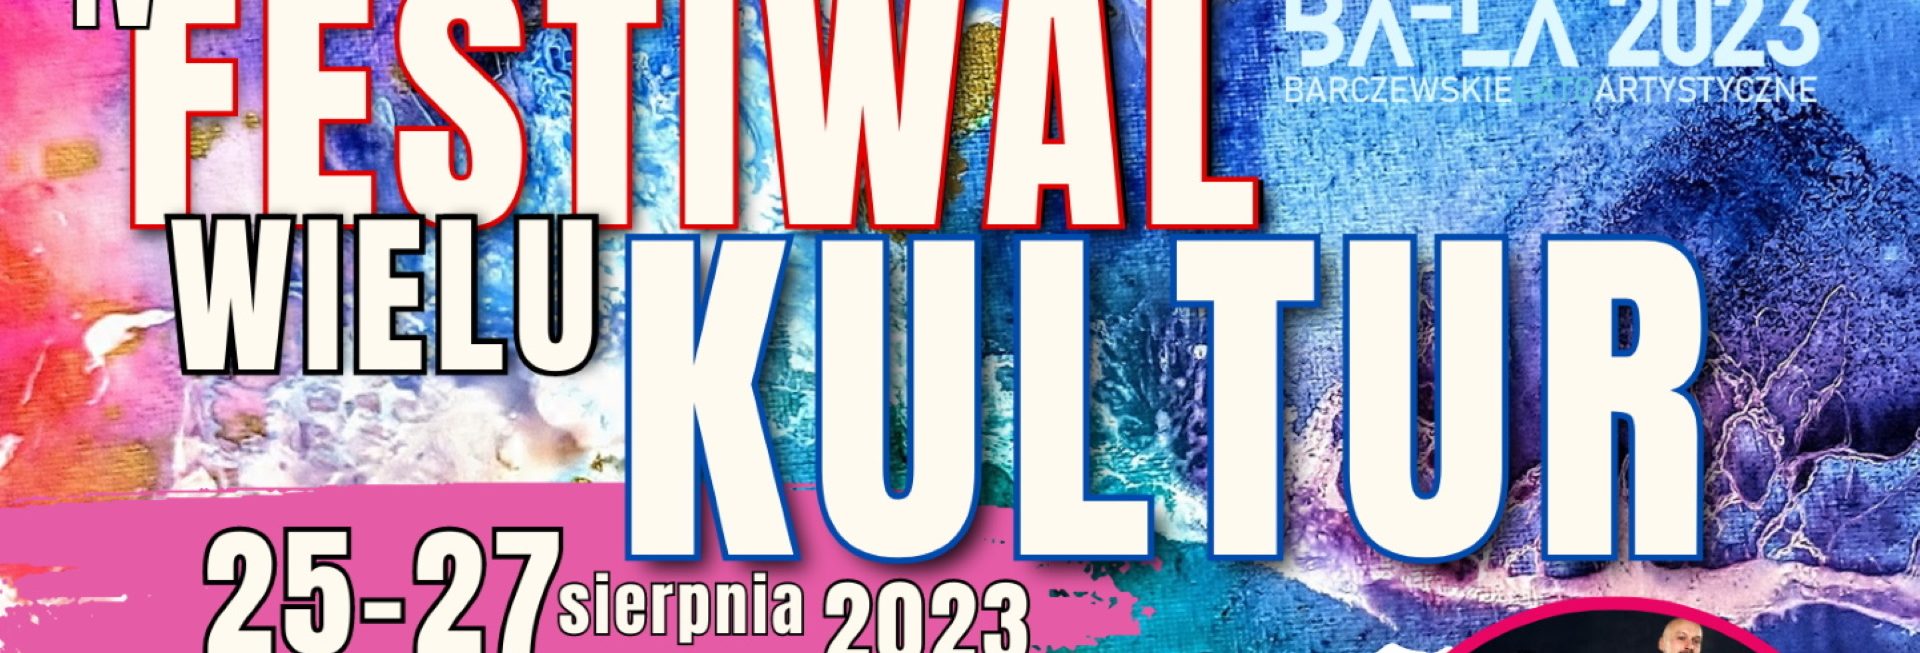 Plakat zapraszający w dniach 25-27 sierpnia 2023 r. do Barczewa na coroczną imprezę 4. edycję Festiwal Wielu Kultur Barczewo 2023.